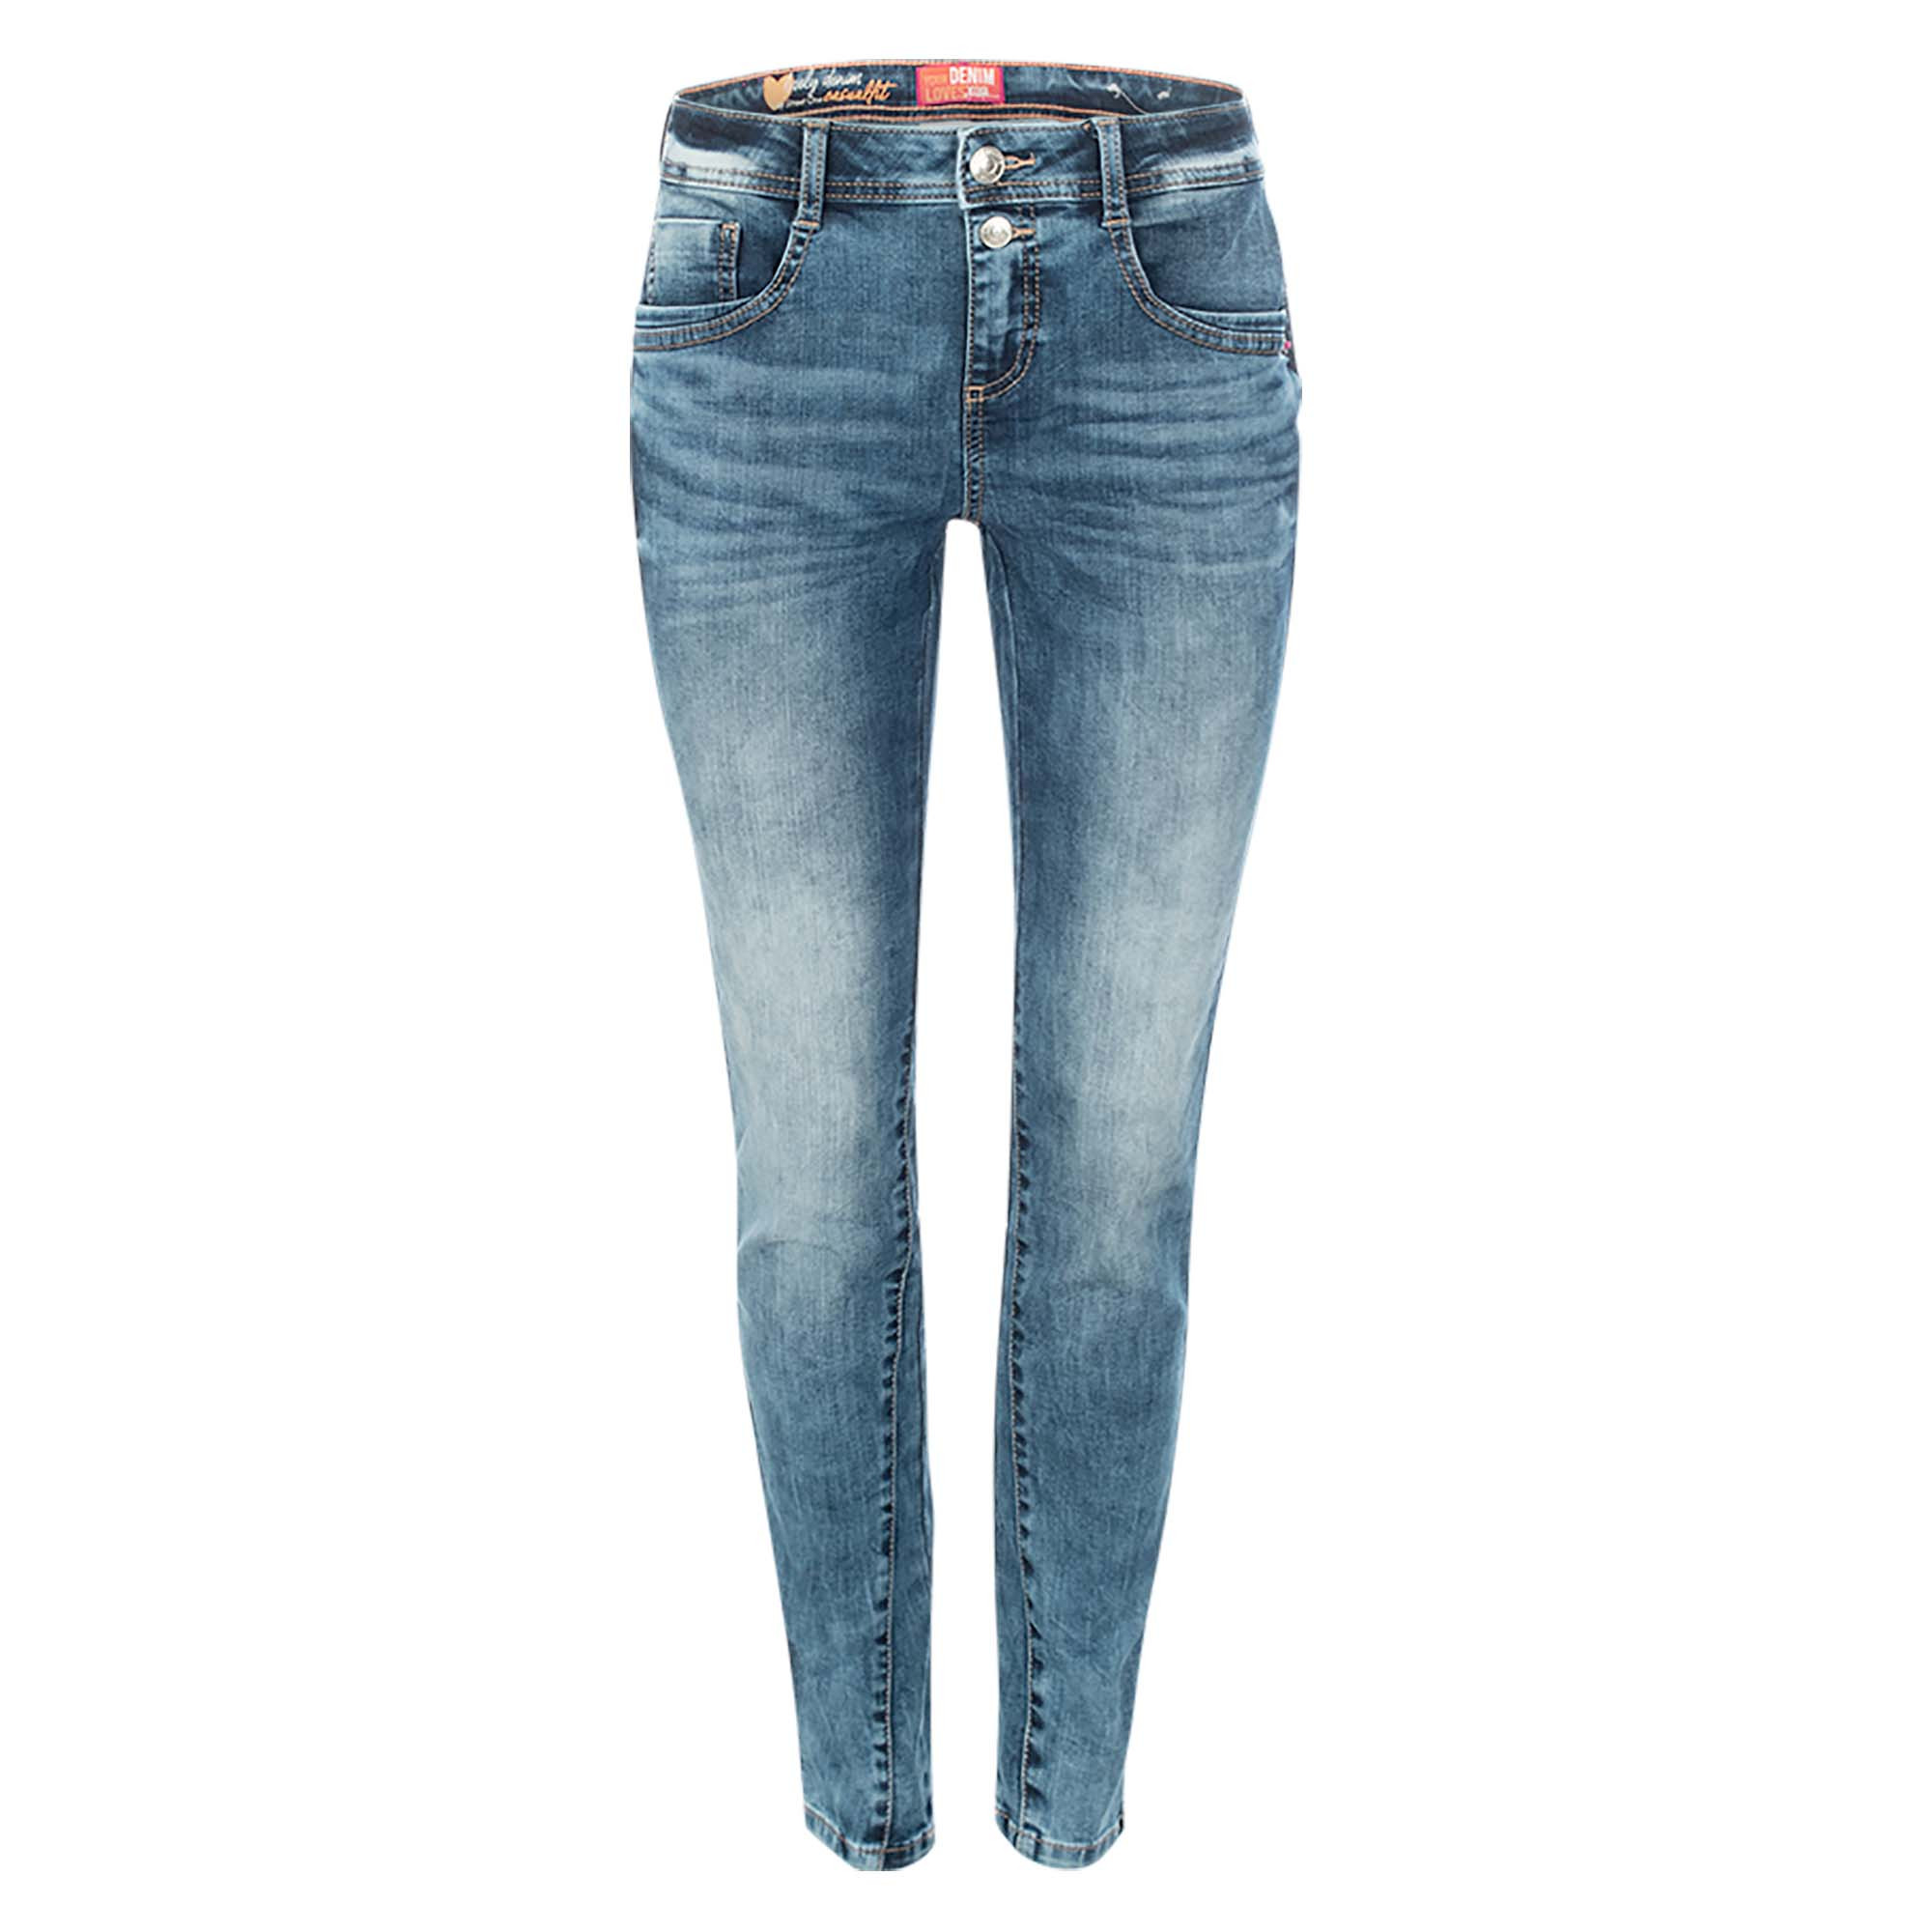 Shop Mein Jane - Fit - - im Slim online bei Jeans kaufen Fischer meinfischer.de